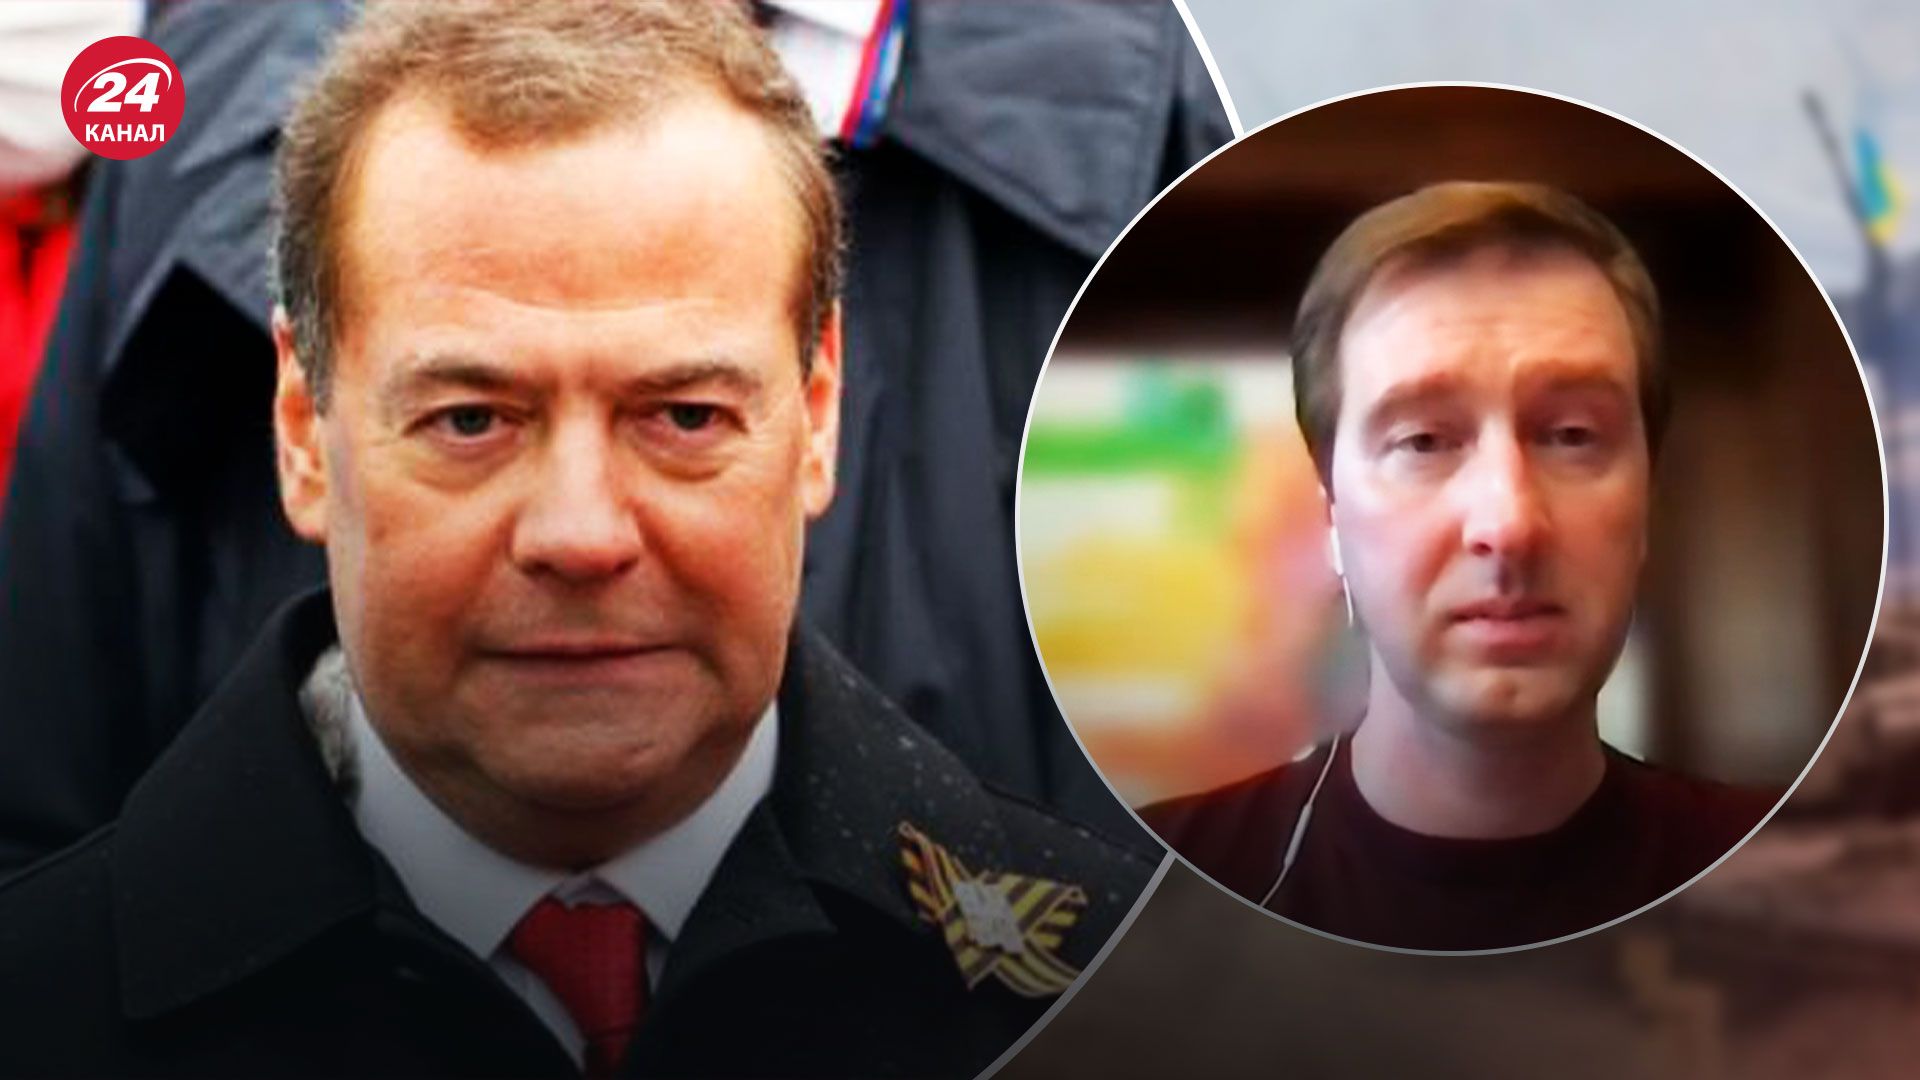 Медведев угрожает Гааге из-за ордера на арест Путина - какой должна быть реакция суда - 24 Канал